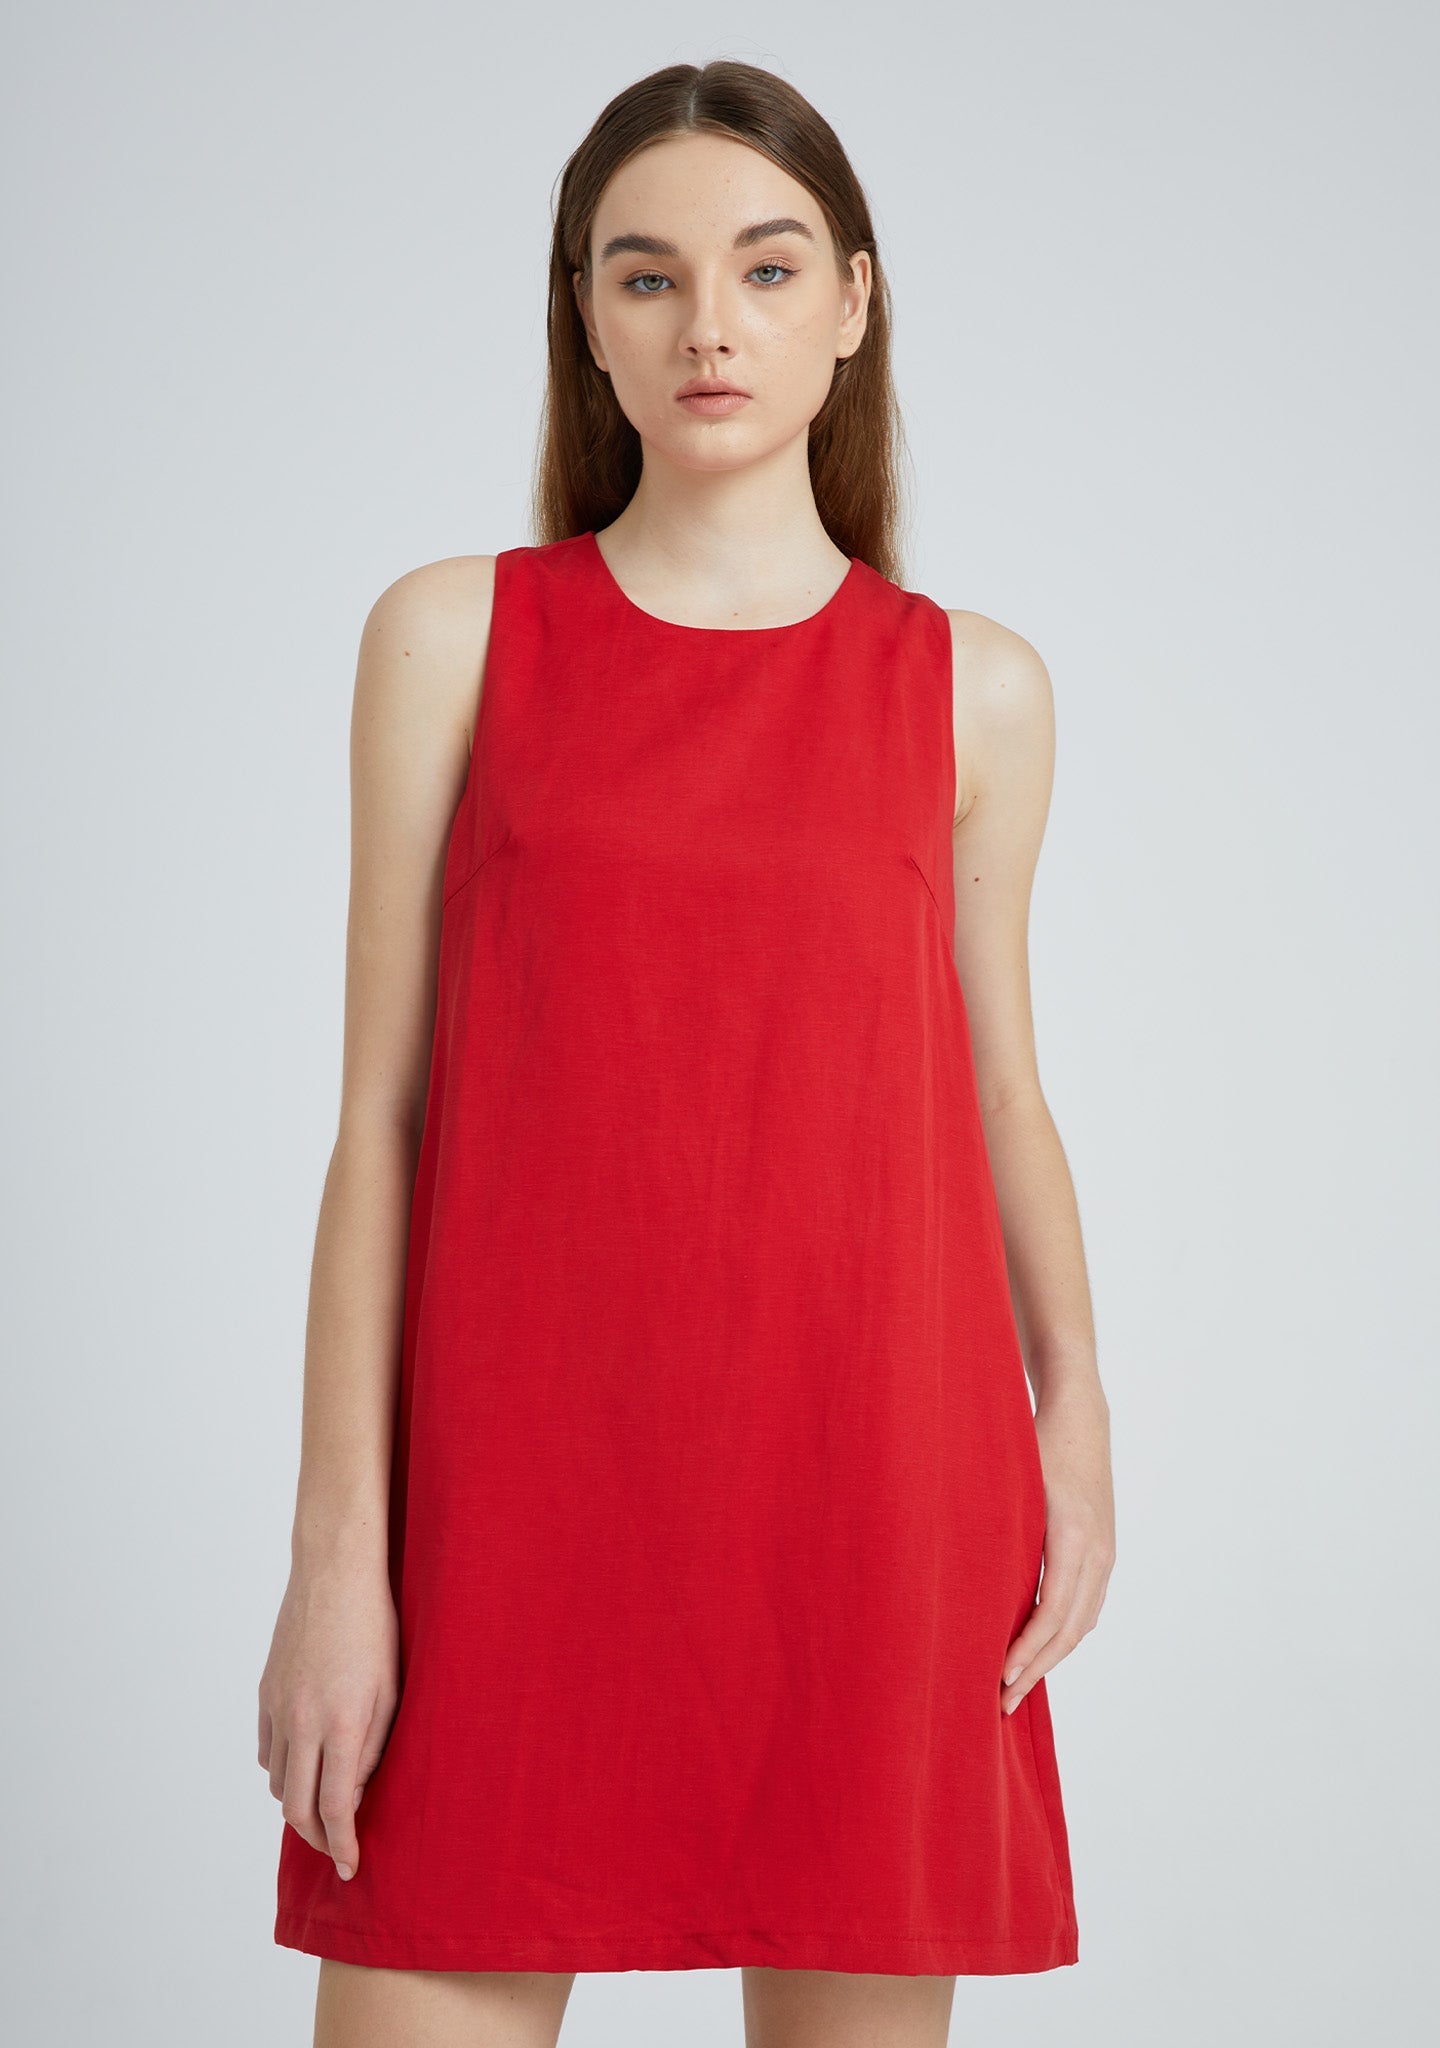 Odette Dress Short Salient Label half front view red